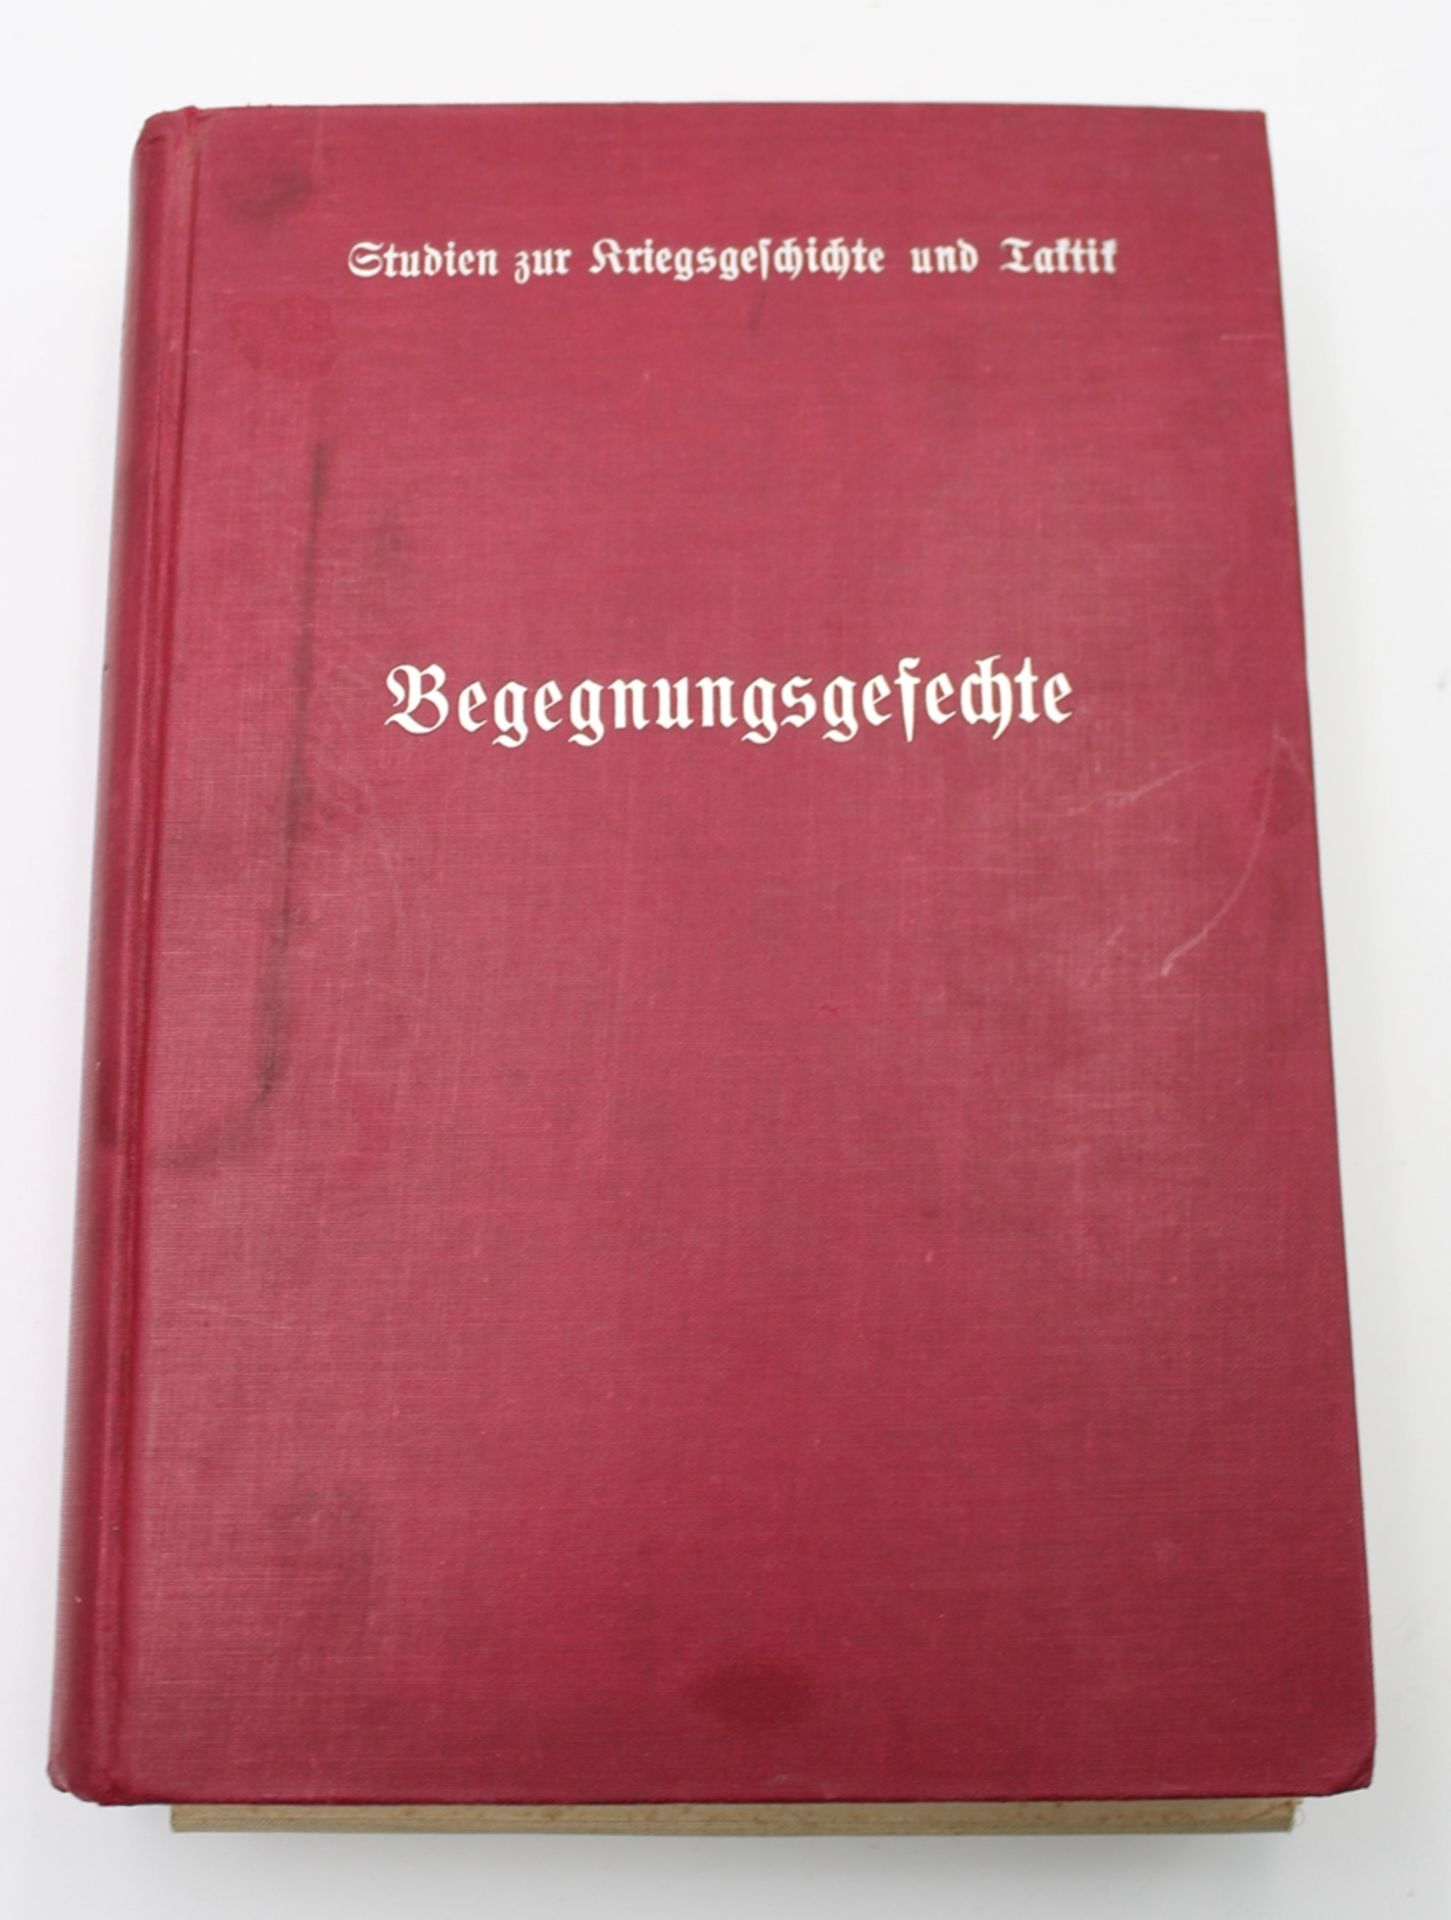 Begegnungsgefechte, mit 7 Textskizzen 24 Karten und 3 Bildbeilagen, 1939, Alters-u. Gebrauchsspuren